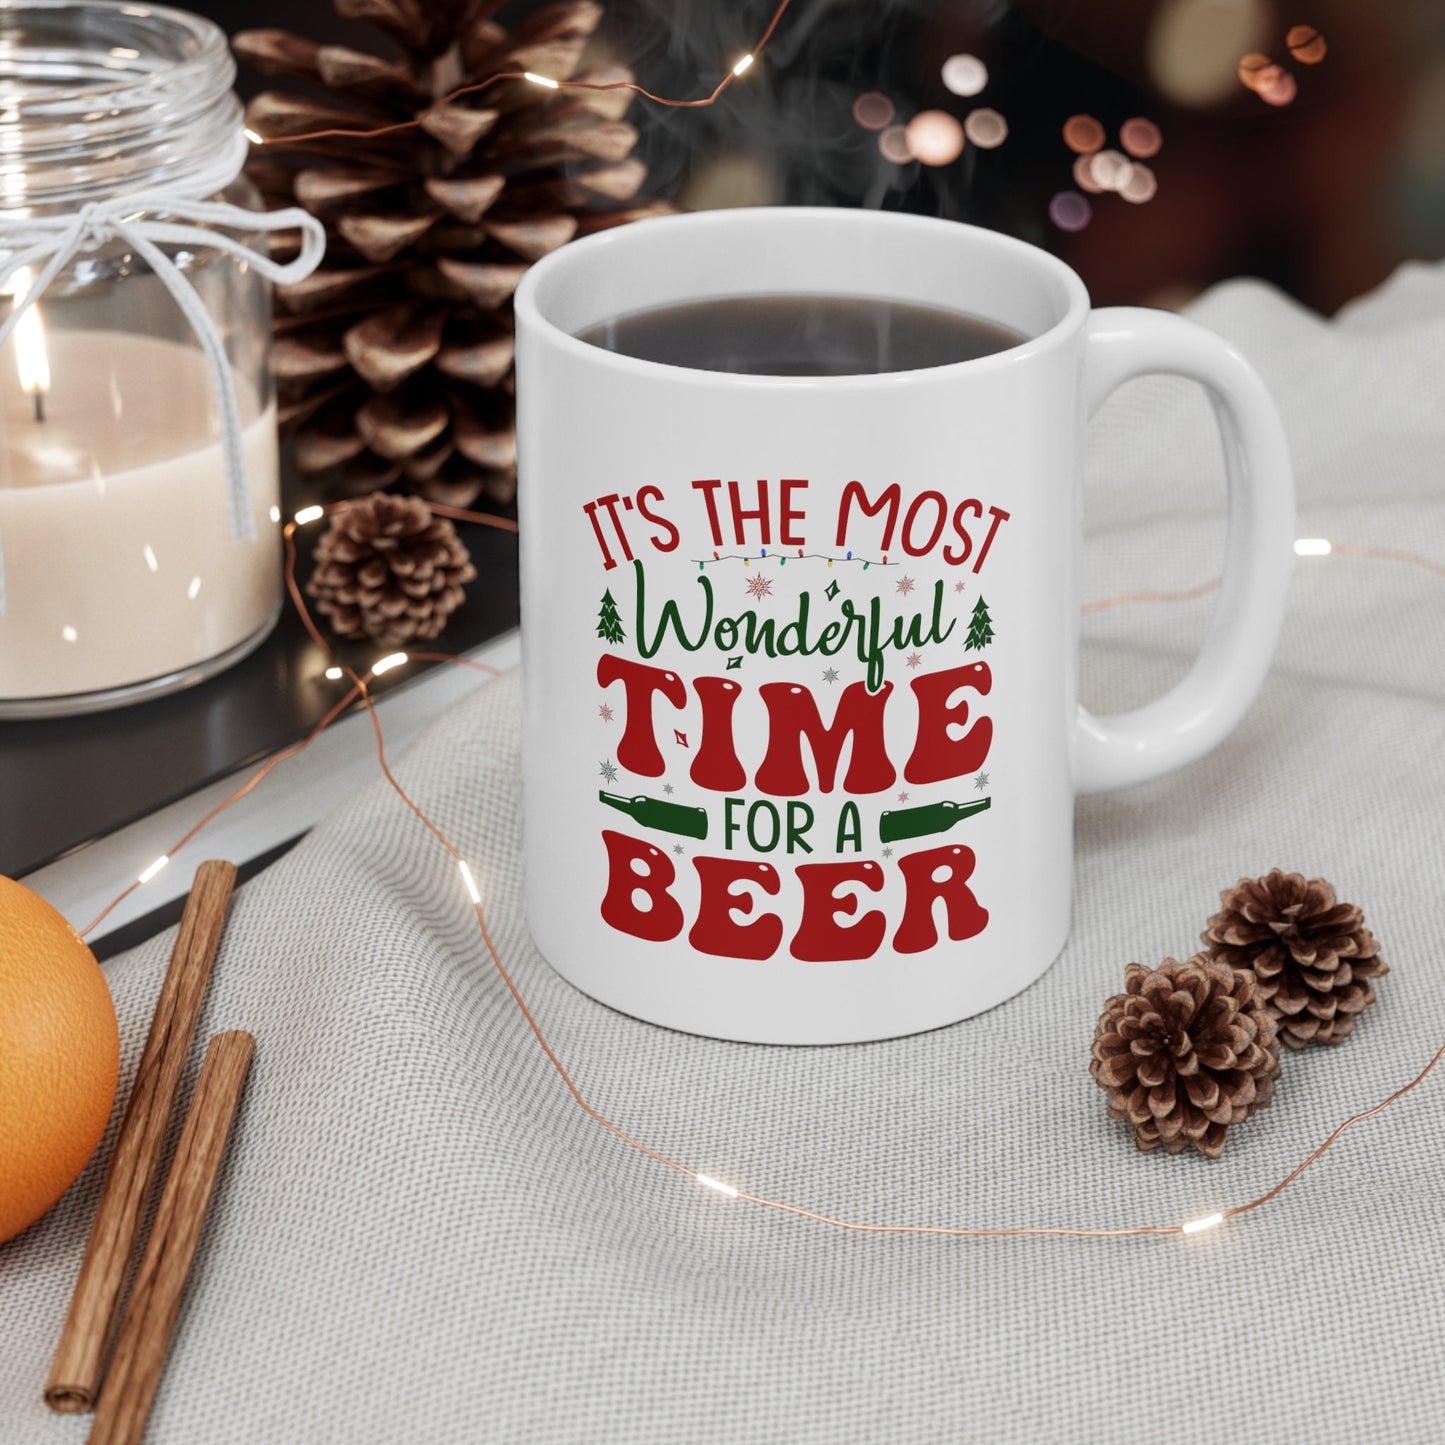 Time for A Beer Christmas Mug, Perfect Holiday Cheer Coffee Mug, Gift Mug for Christmas Spirit, Cute Christmas mugs for Family and friends